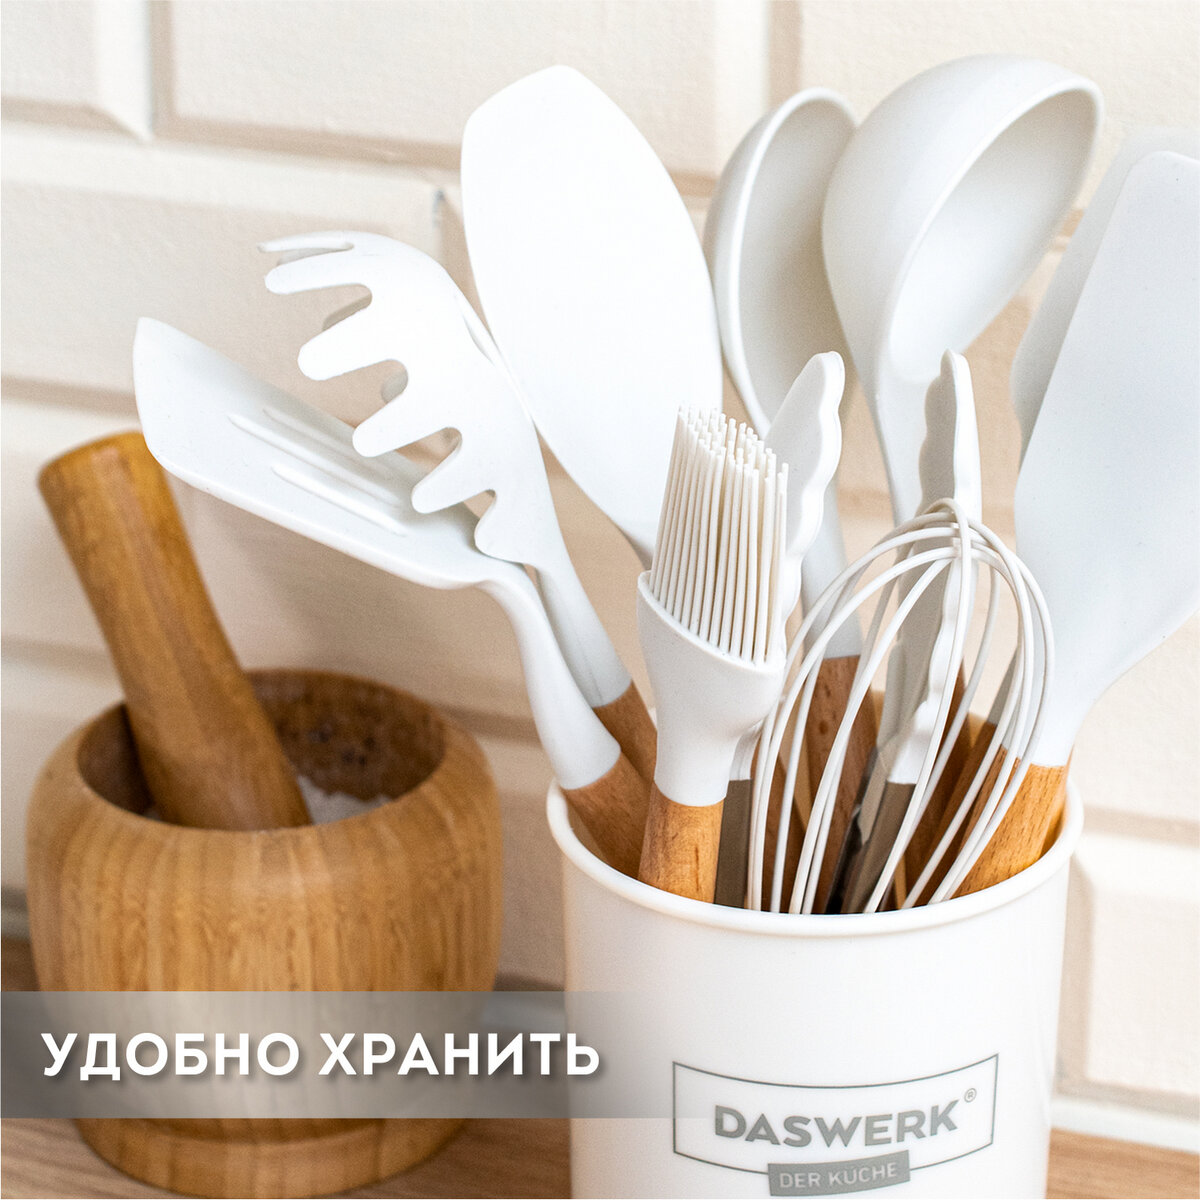 Набор кухонных принадлежностей DASWERK силиконовые с деревянными ручками 12 в 1 - фото 16